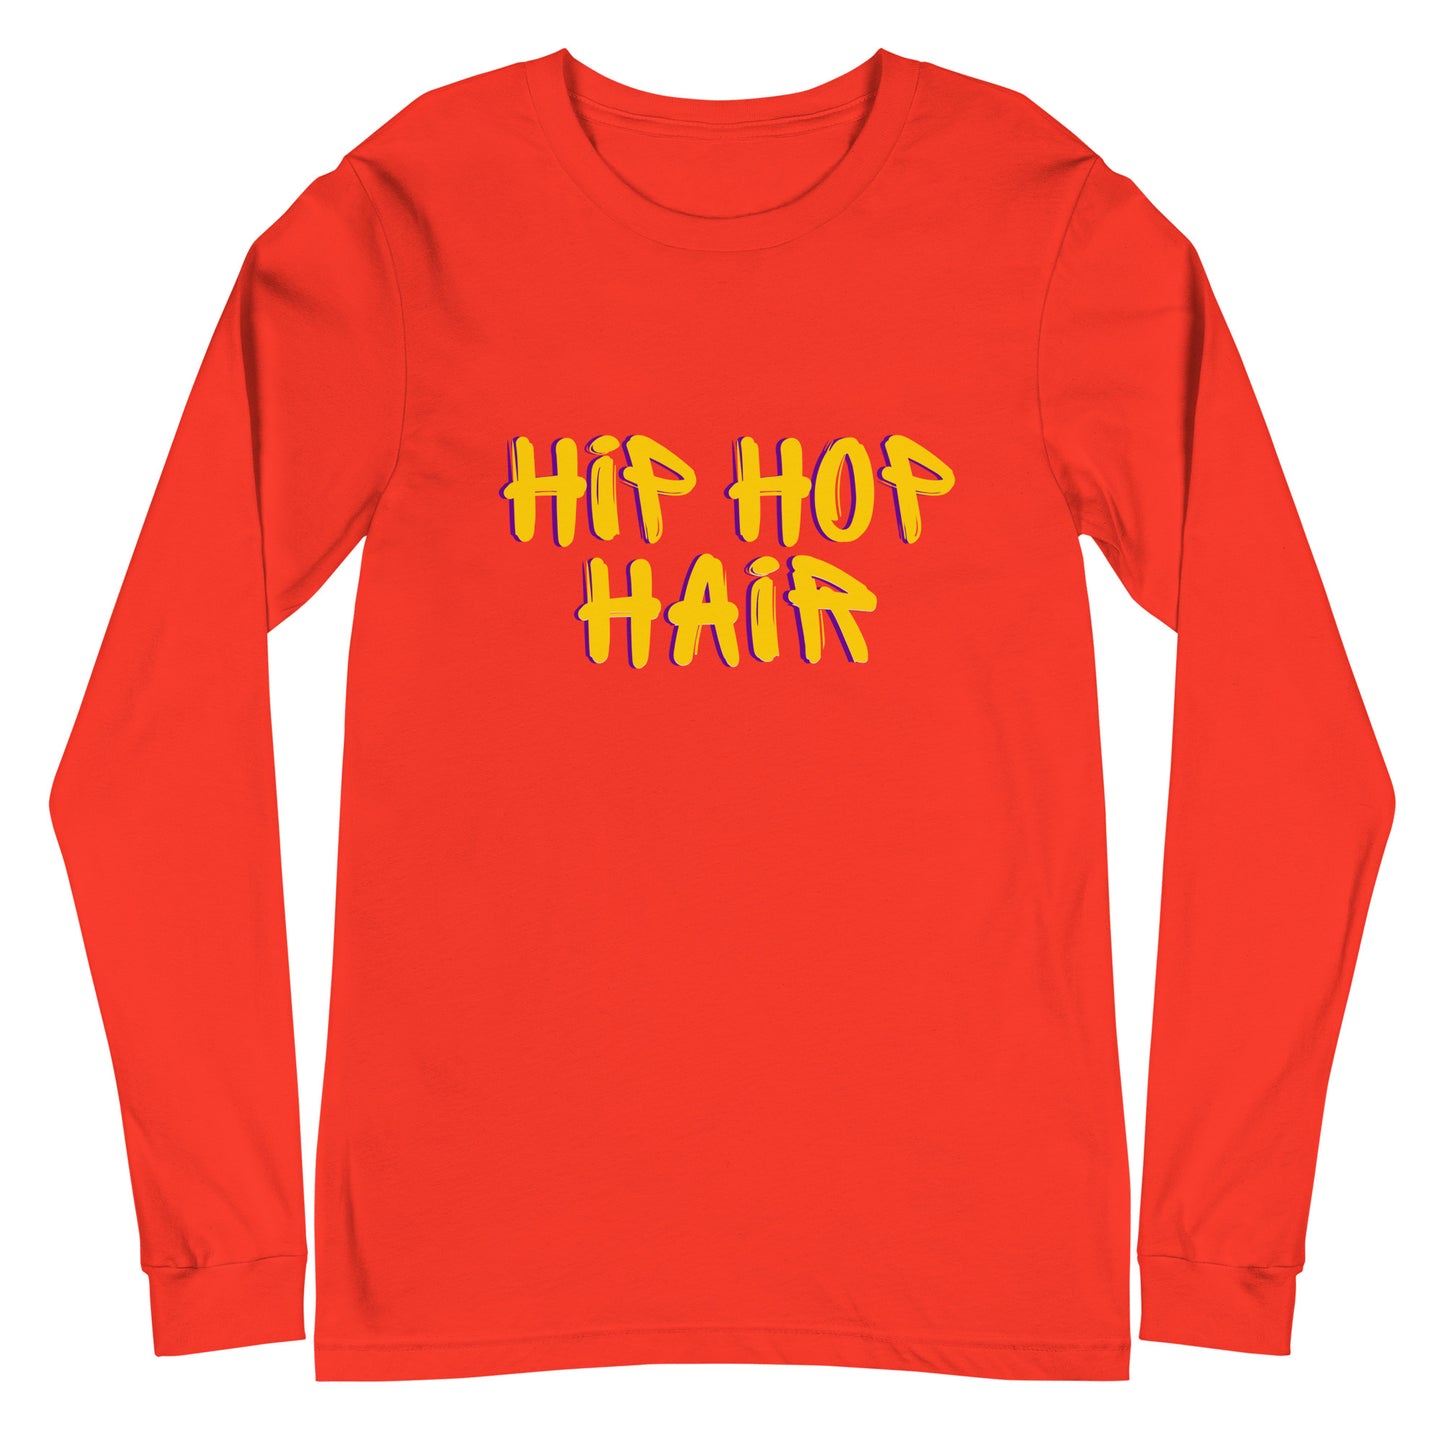 Hip Hop Hair Women's and Teen's Long Sleeve Tee